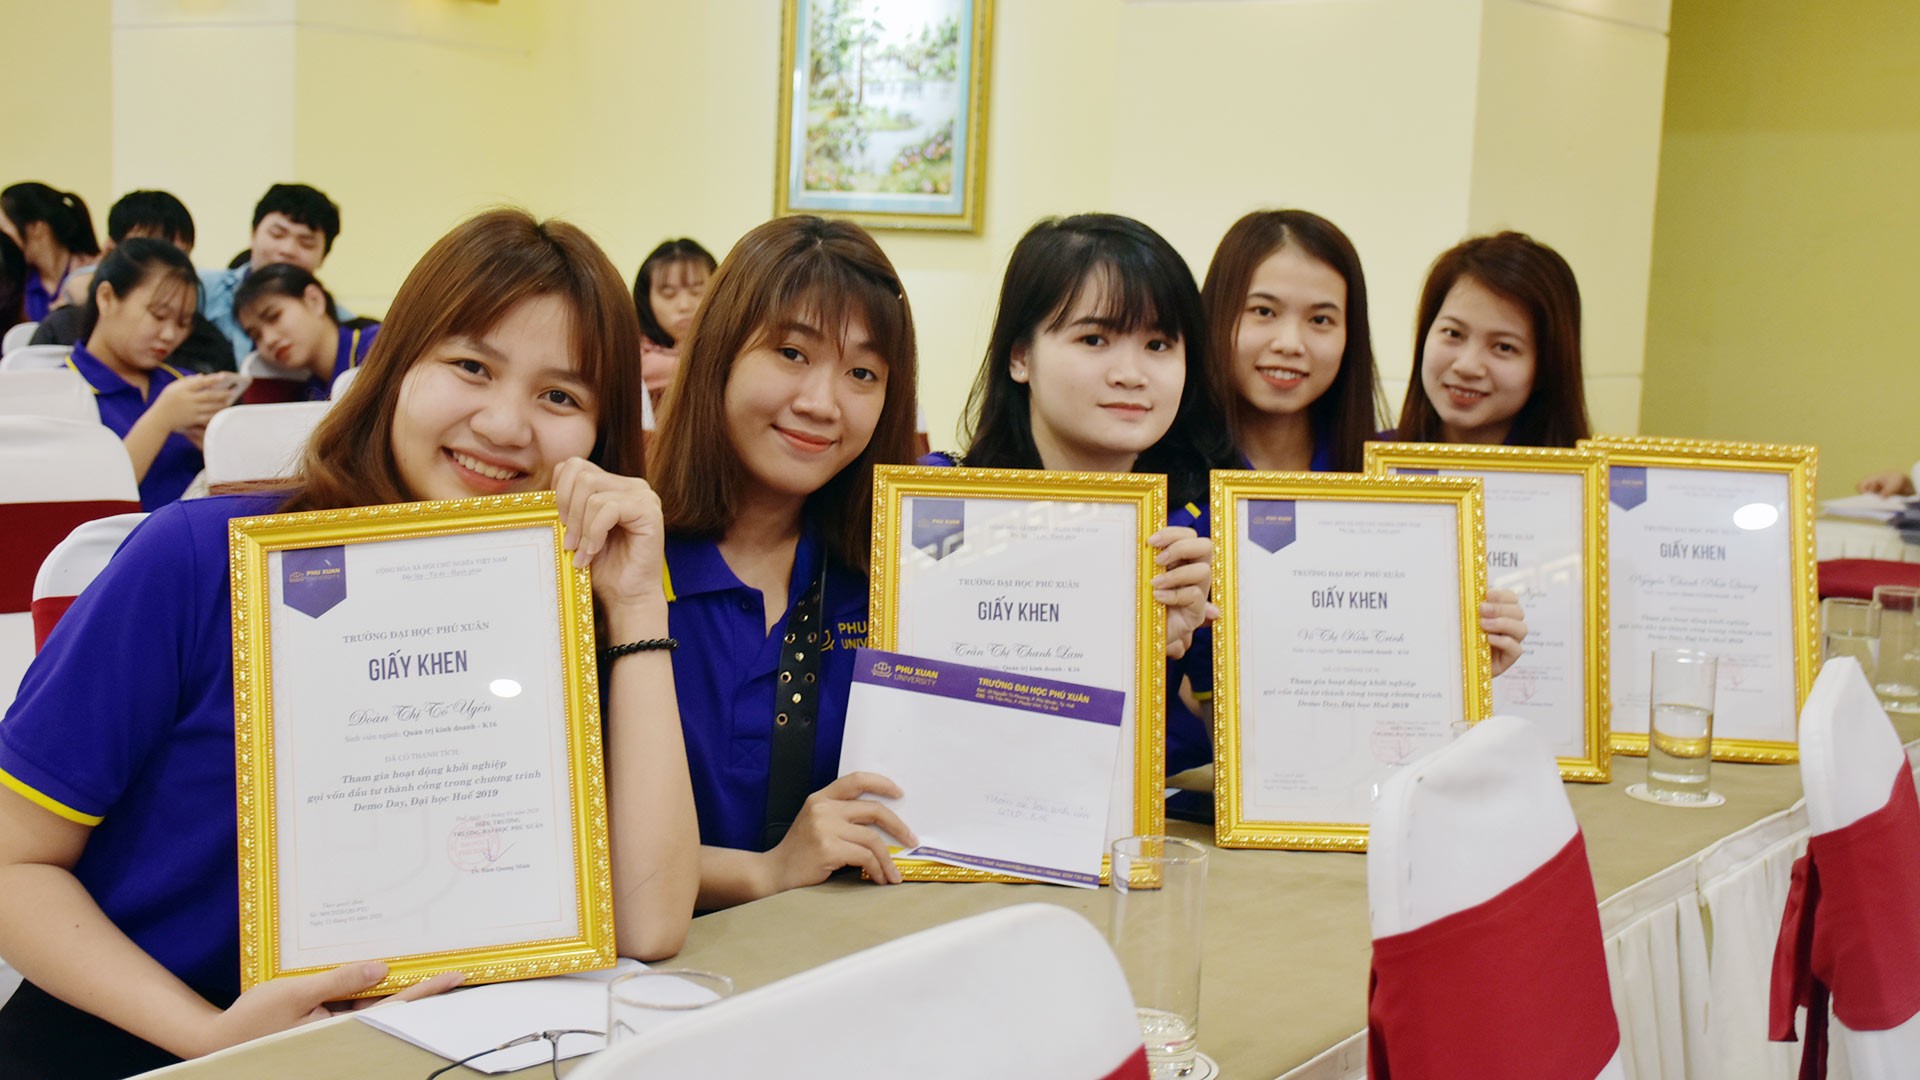 Cam kết giới thiệu việc làm cho sinh viên sau tốt nghiệp: Hiếm có như Đại học Phú Xuân